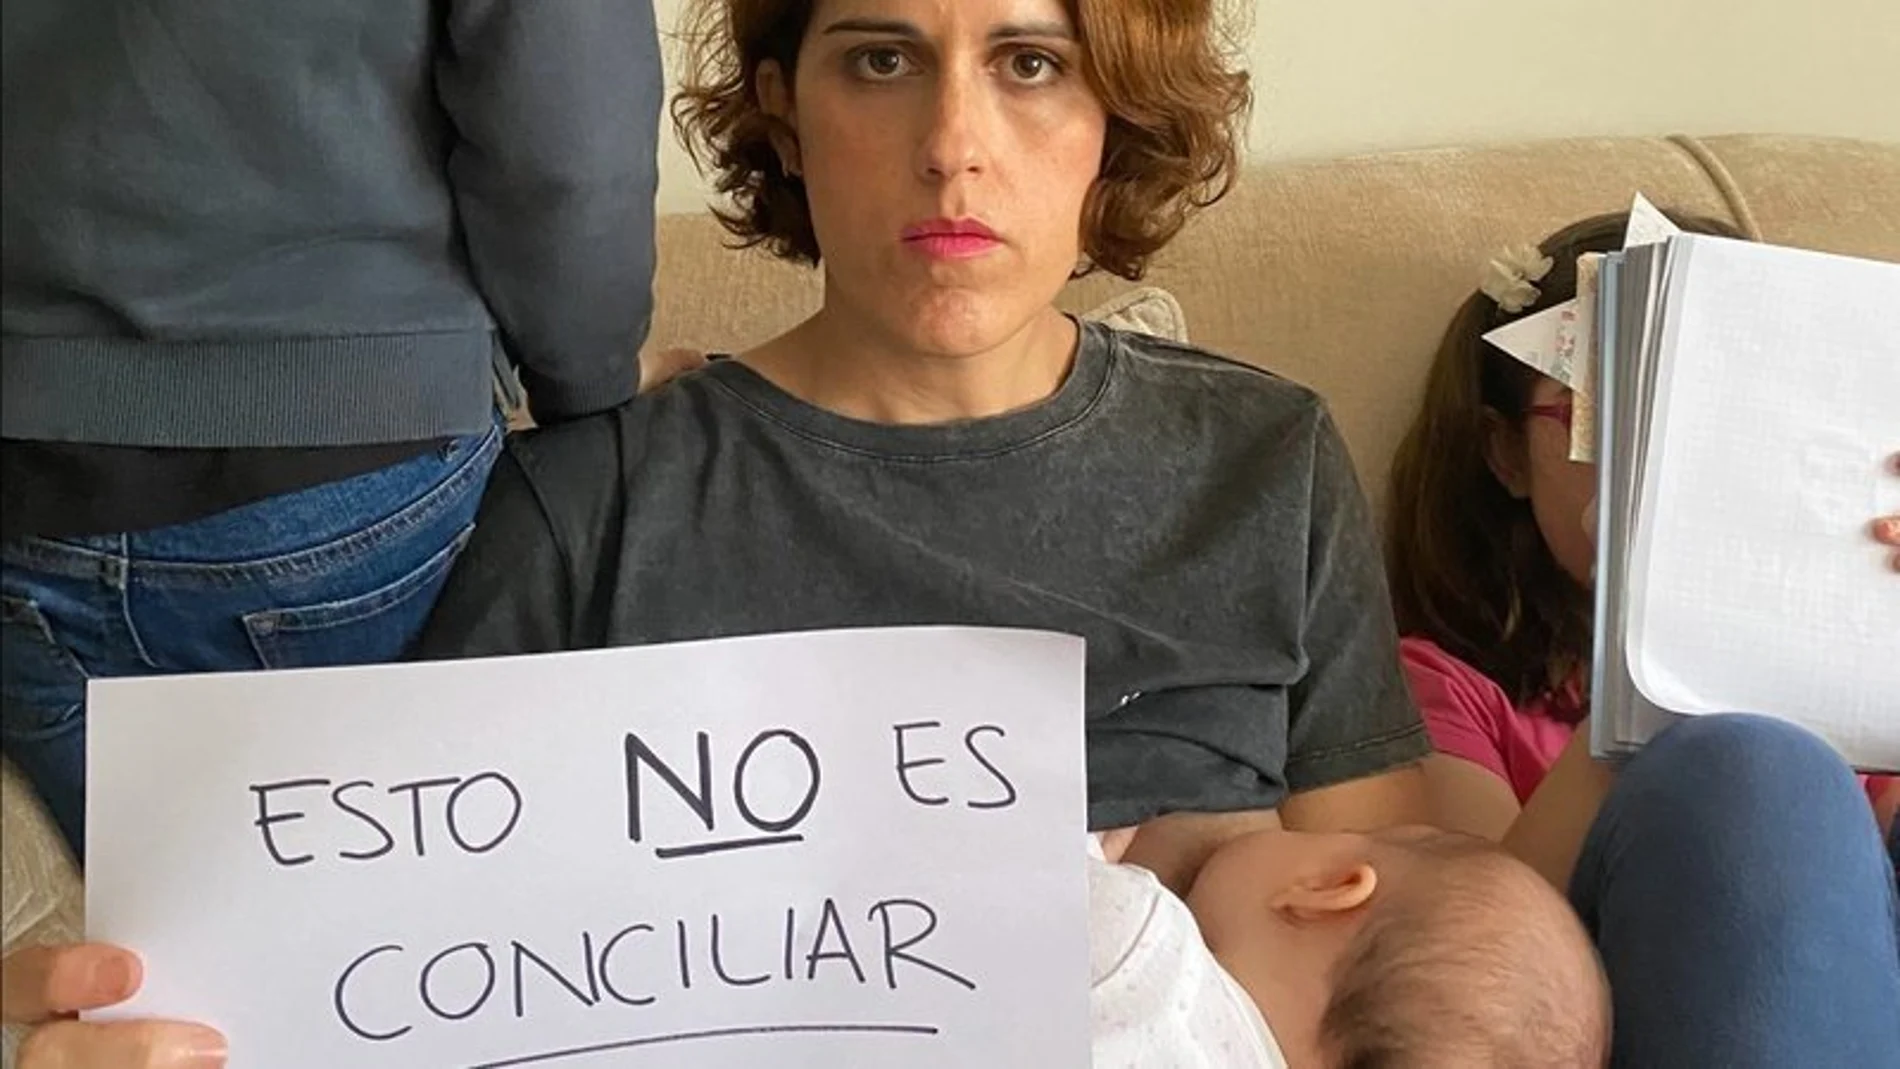 Imagen de la campaña #EstoNoEsConciliar